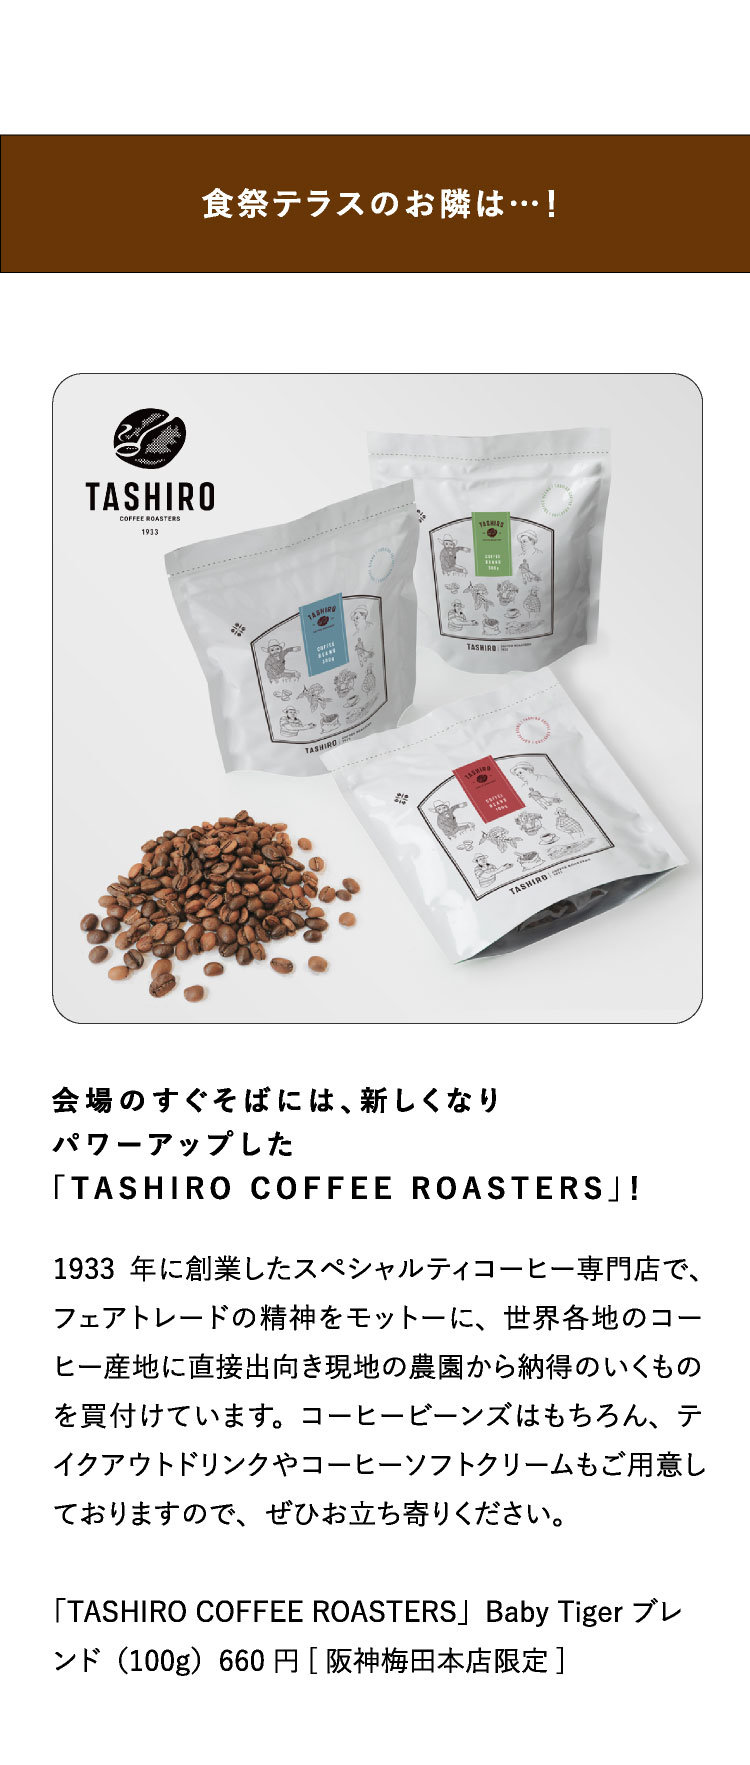 食祭テラスのお隣は…！会場のすぐそばには、新しくなり
パワーアップした
「TASHIRO COFFEE ROASTERS」！1933年に創業したスペシャルティコーヒー専門店で、フェアトレードの精神をモットーに、世界各地のコーヒー産地に直接出向き現地の農園から納得のいくものを買付けています。コーヒービーンズはもちろん、テイクアウトドリンクやコーヒーソフトクリームもご用意しておりますので、ぜひお立ち寄りください。
「TASHIRO COFFEE ROASTERS」Baby Tiger ブレンド（100g）660円[阪神梅田本店限定]